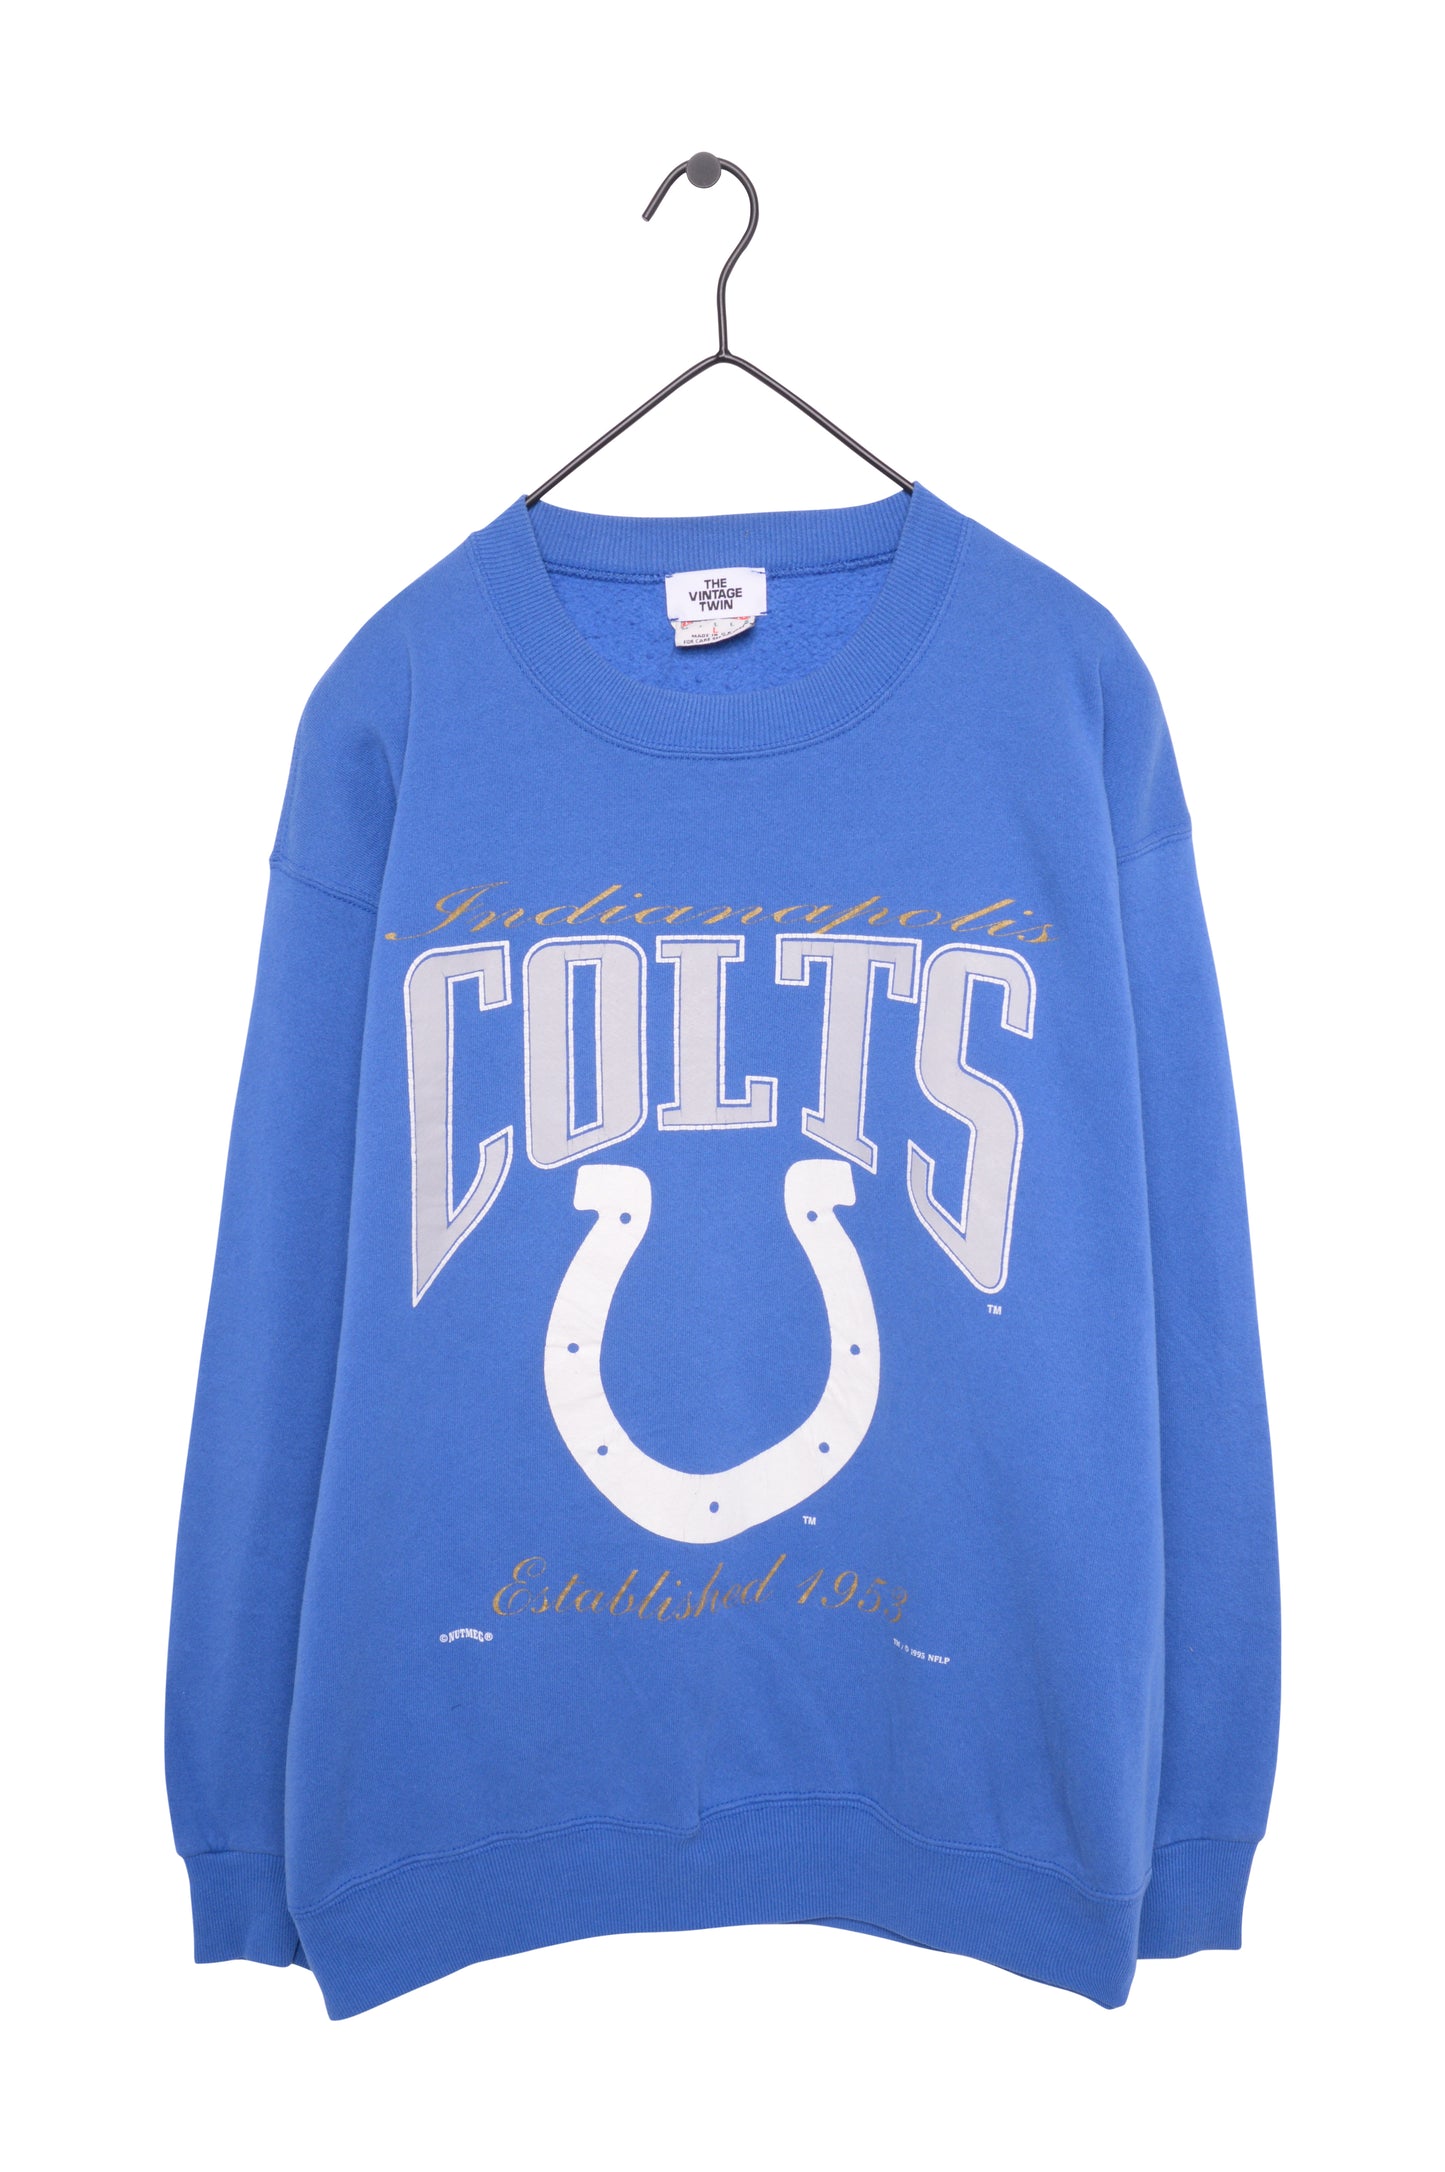 1995 Indianapolis Colts Sweatshirt USA